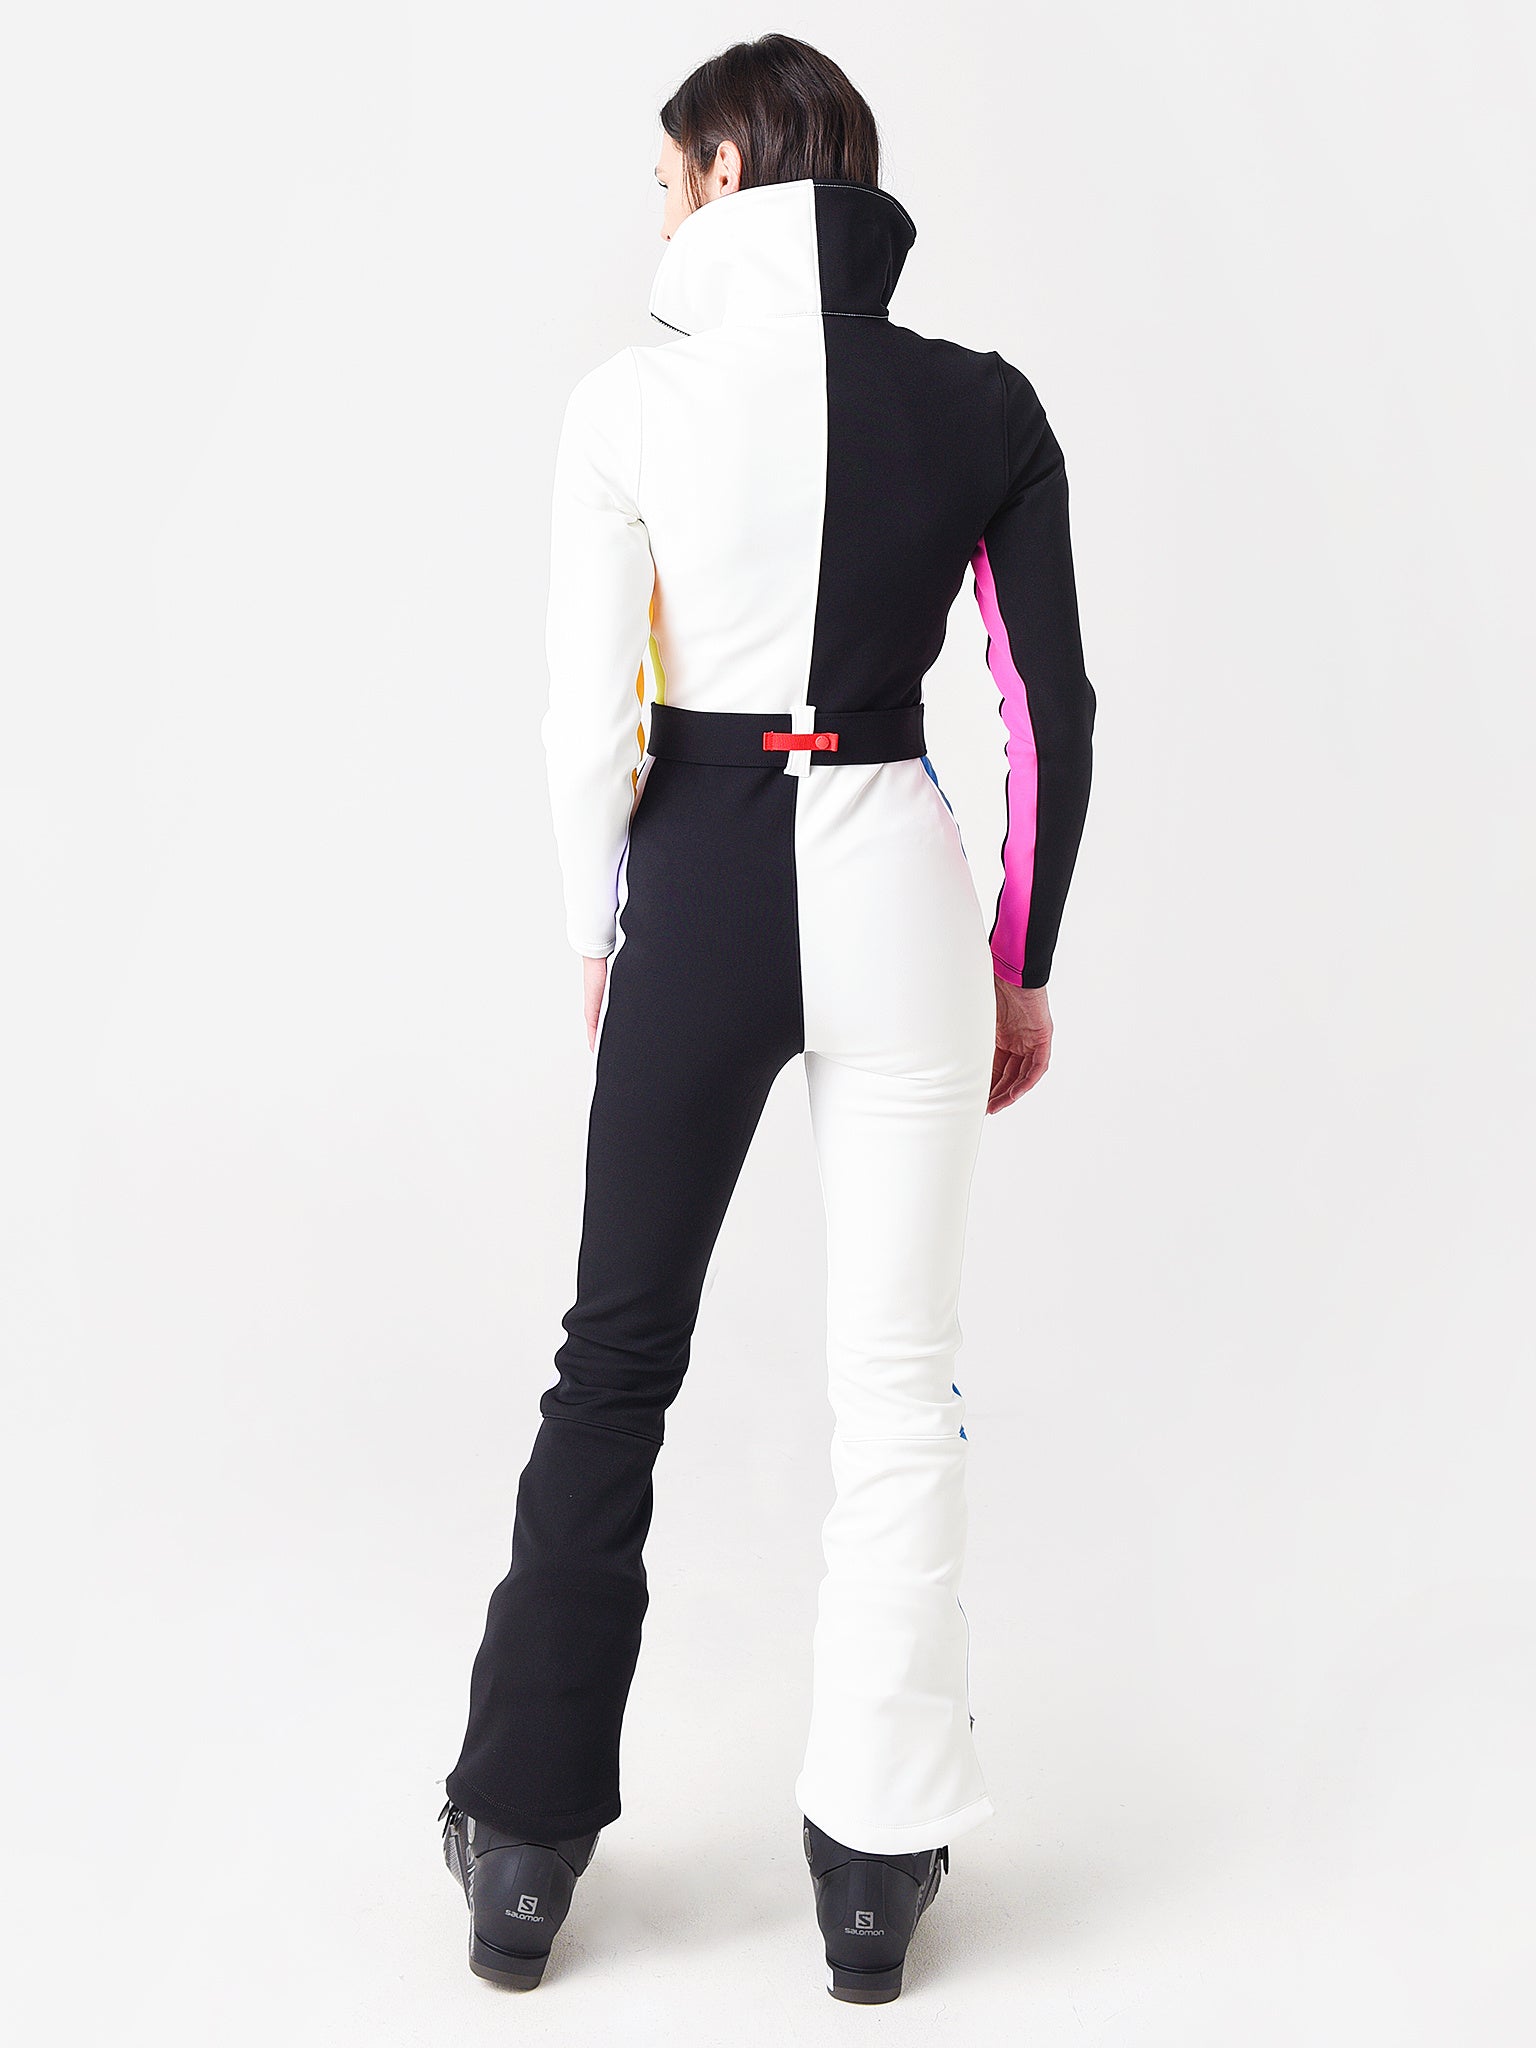 ongebruikt Concentratie Panter Cordova Women's Waterproof Stretch Ski Suit - Saint Bernard